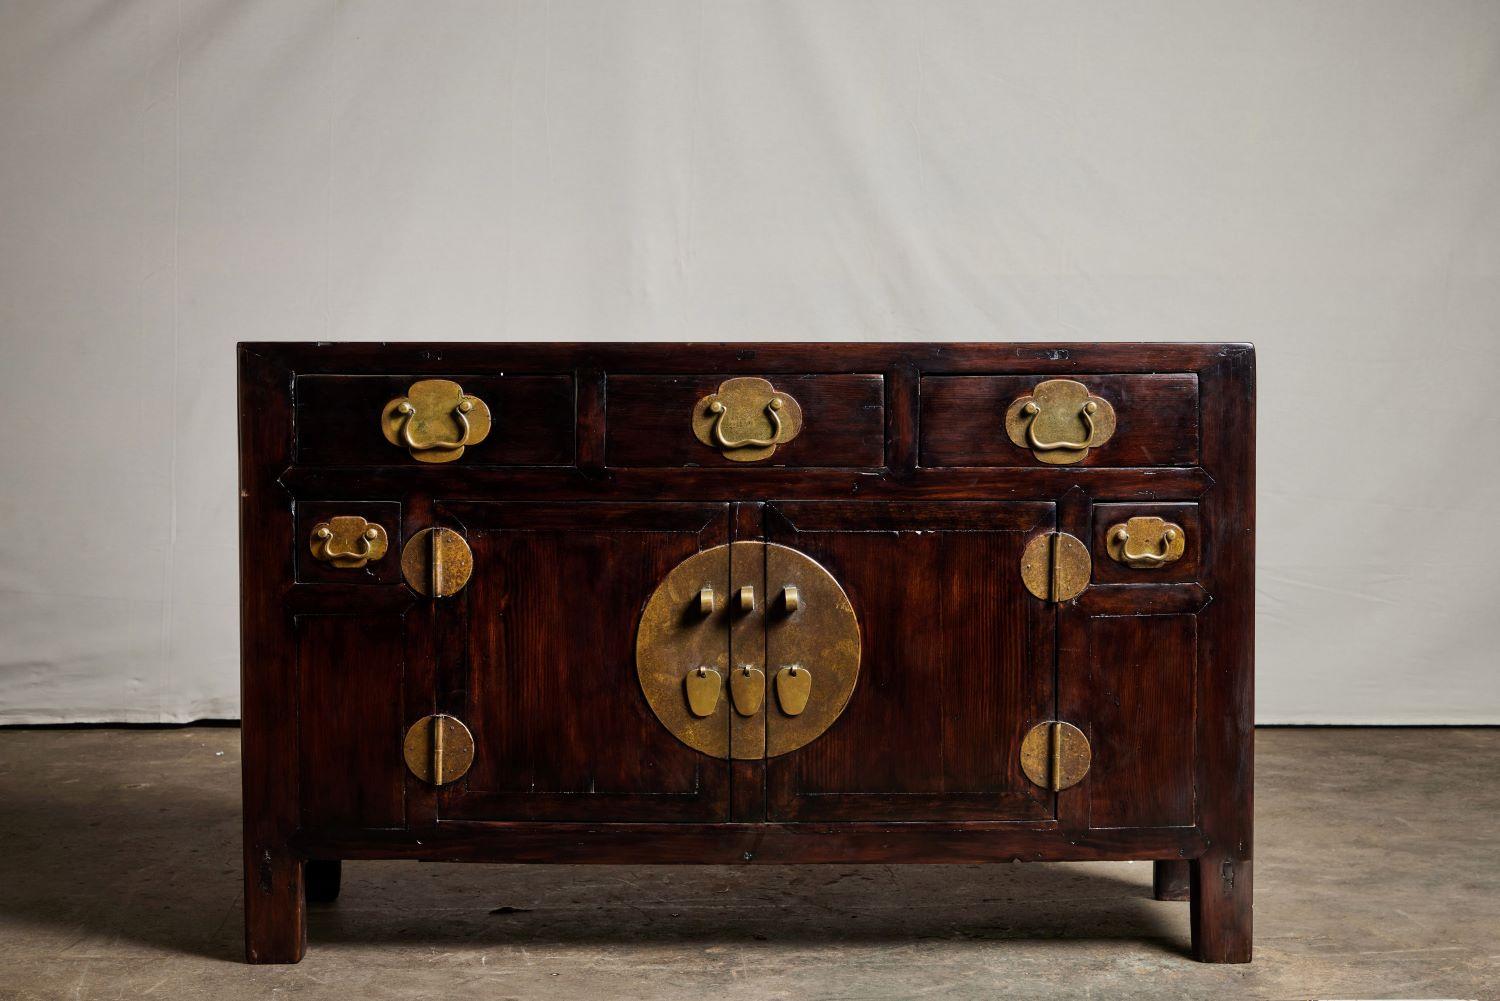 Une étroite armoire chinoise en pin jaune du XIXe siècle, au grain très fin et aux ferrures en laiton. Le meuble comporte trois tiroirs dans sa partie supérieure et un grand meuble en dessous. La grande armoire est ornée d'un écusson en laiton et